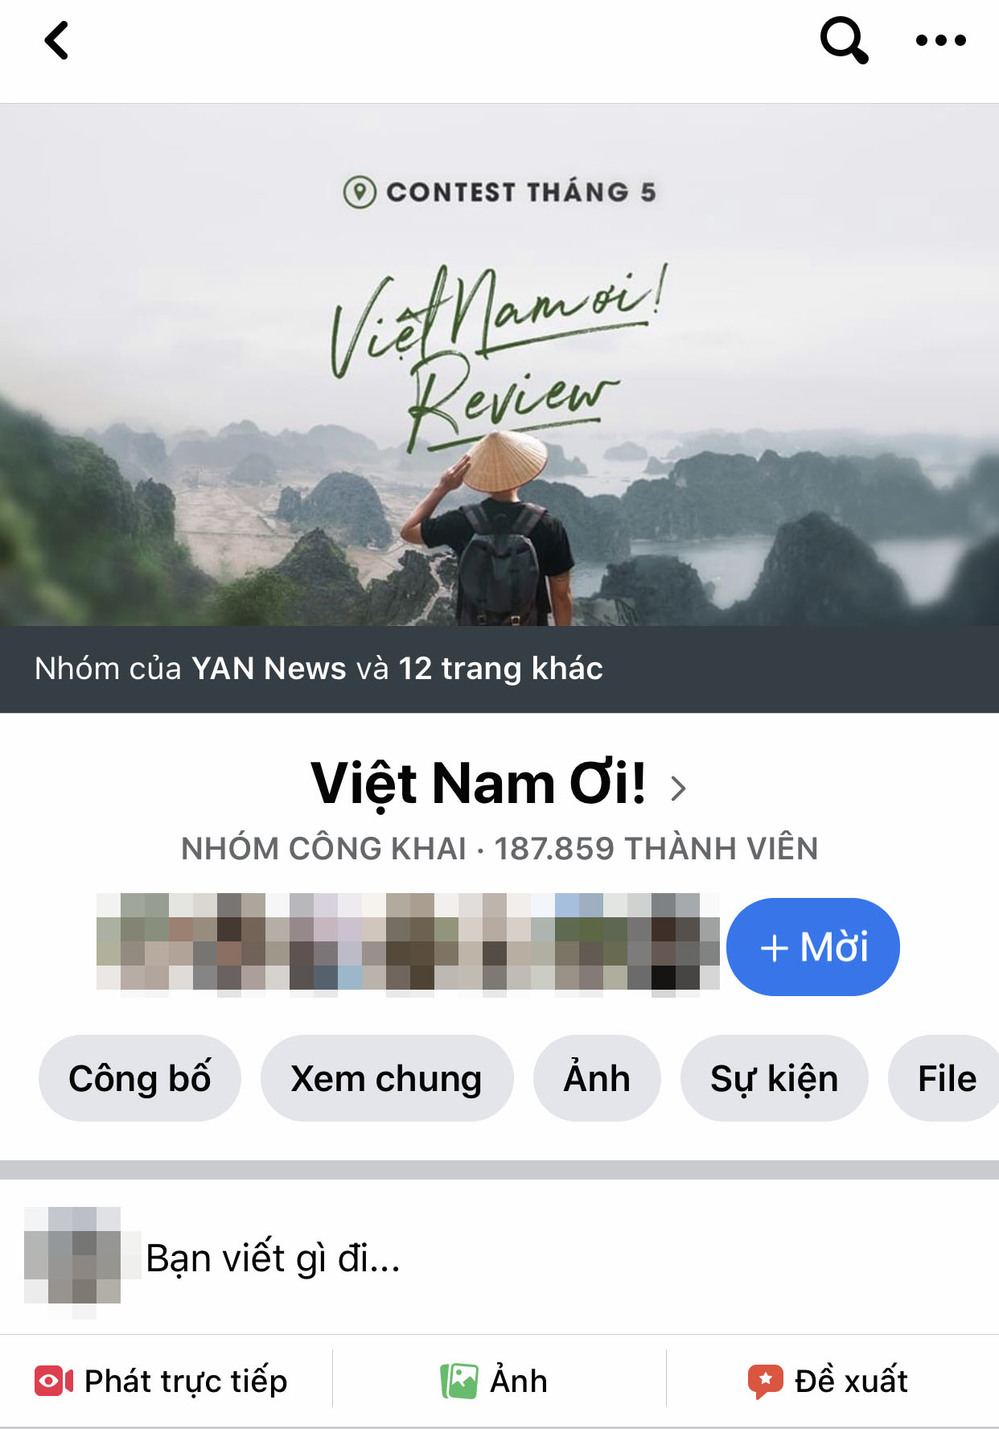  
Cộng đồng Việt Nam Ơi có lượng thành viên "khủng".